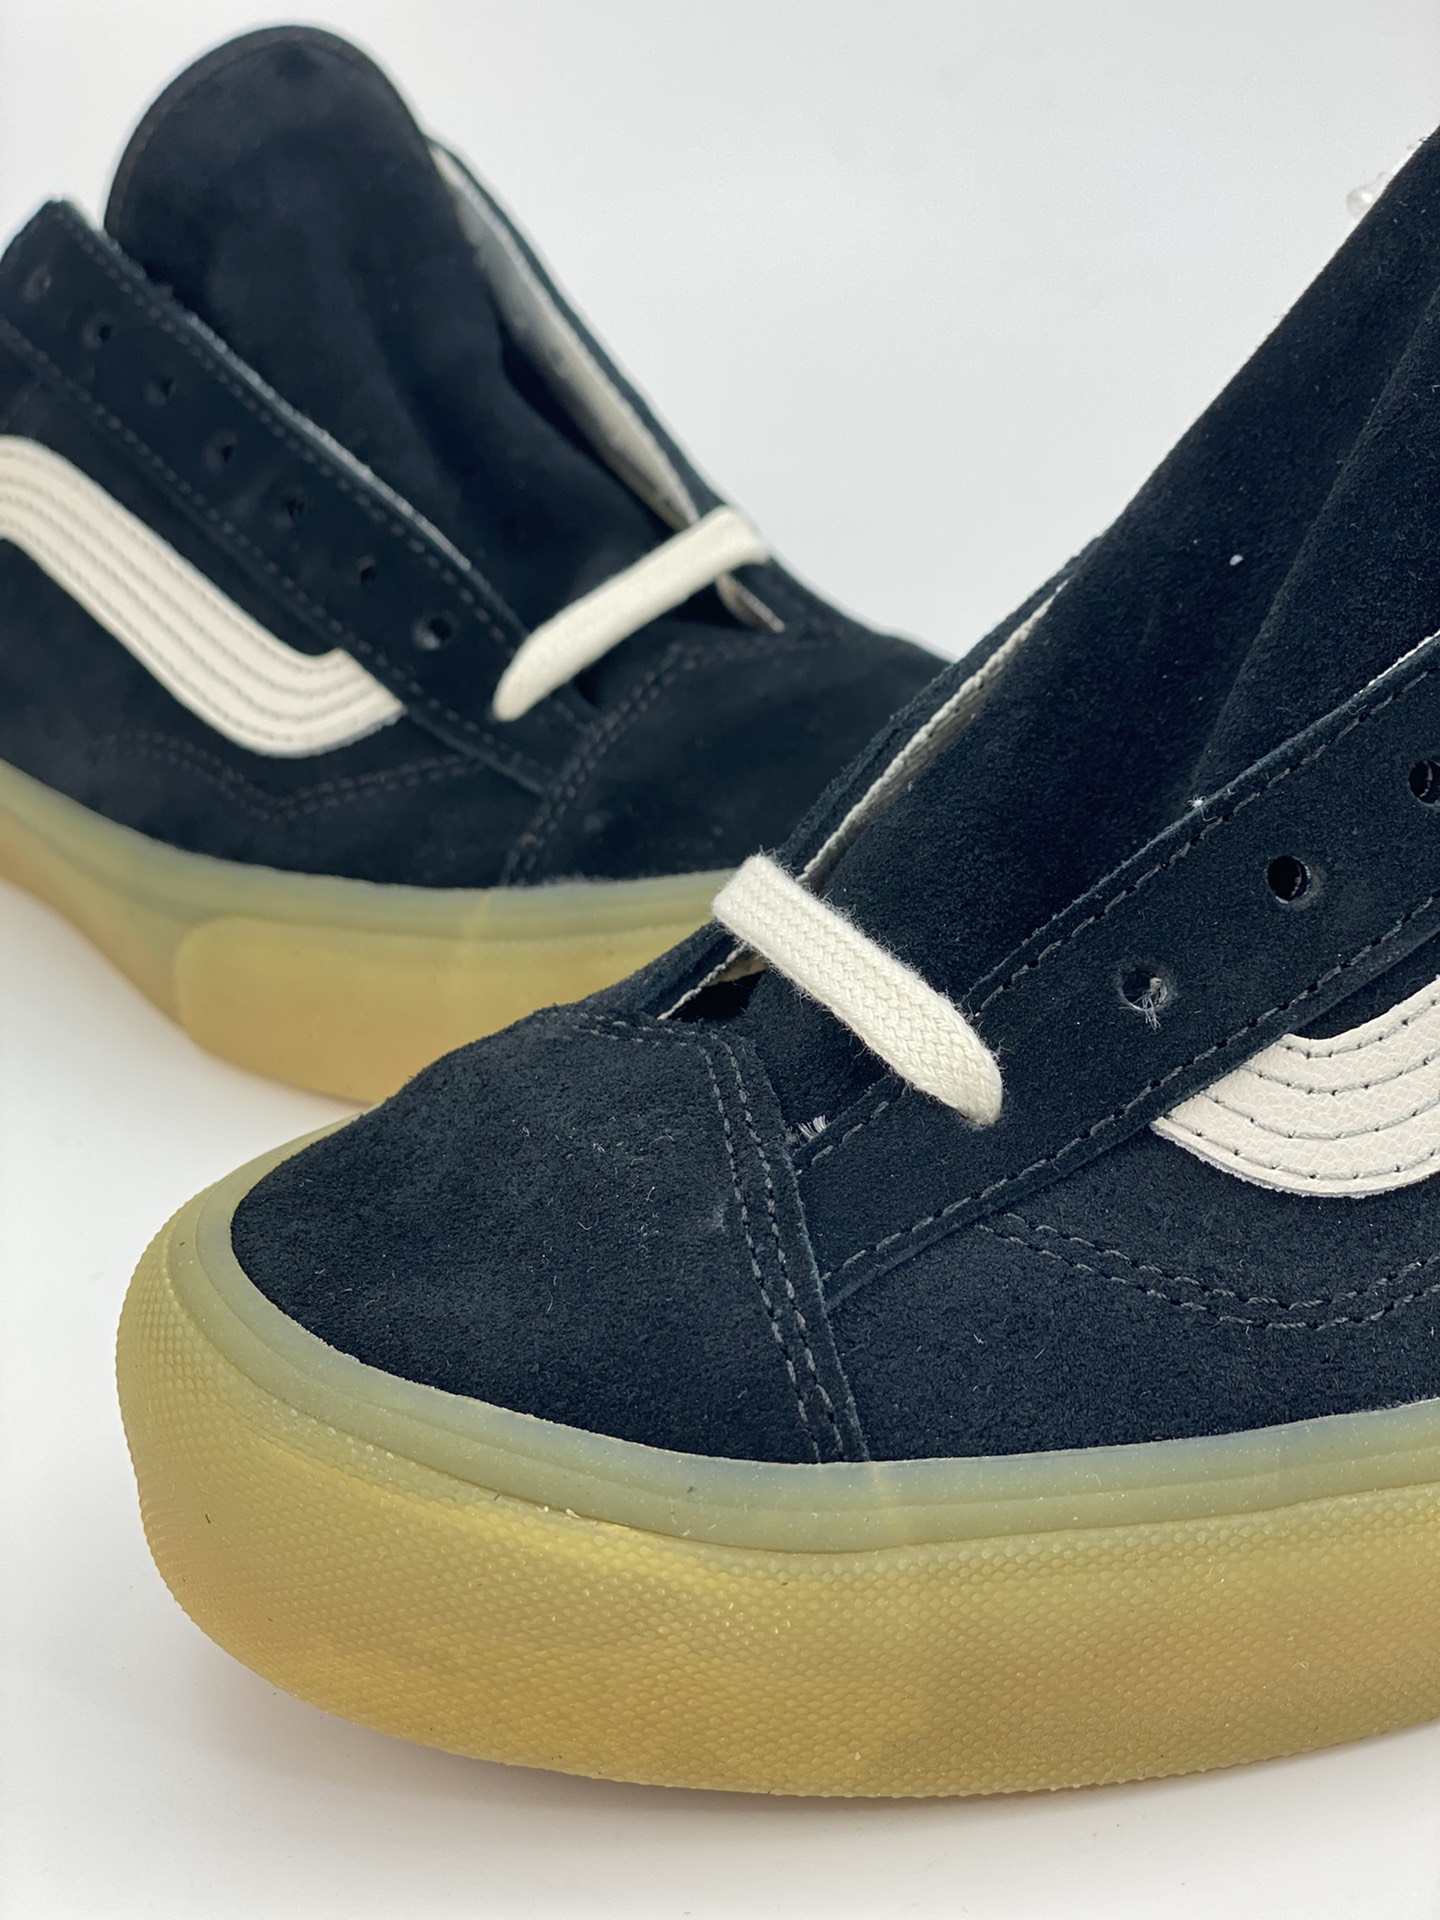 VANS Style 36 black rubber sole men's and women's suede versatile low-top sneakers